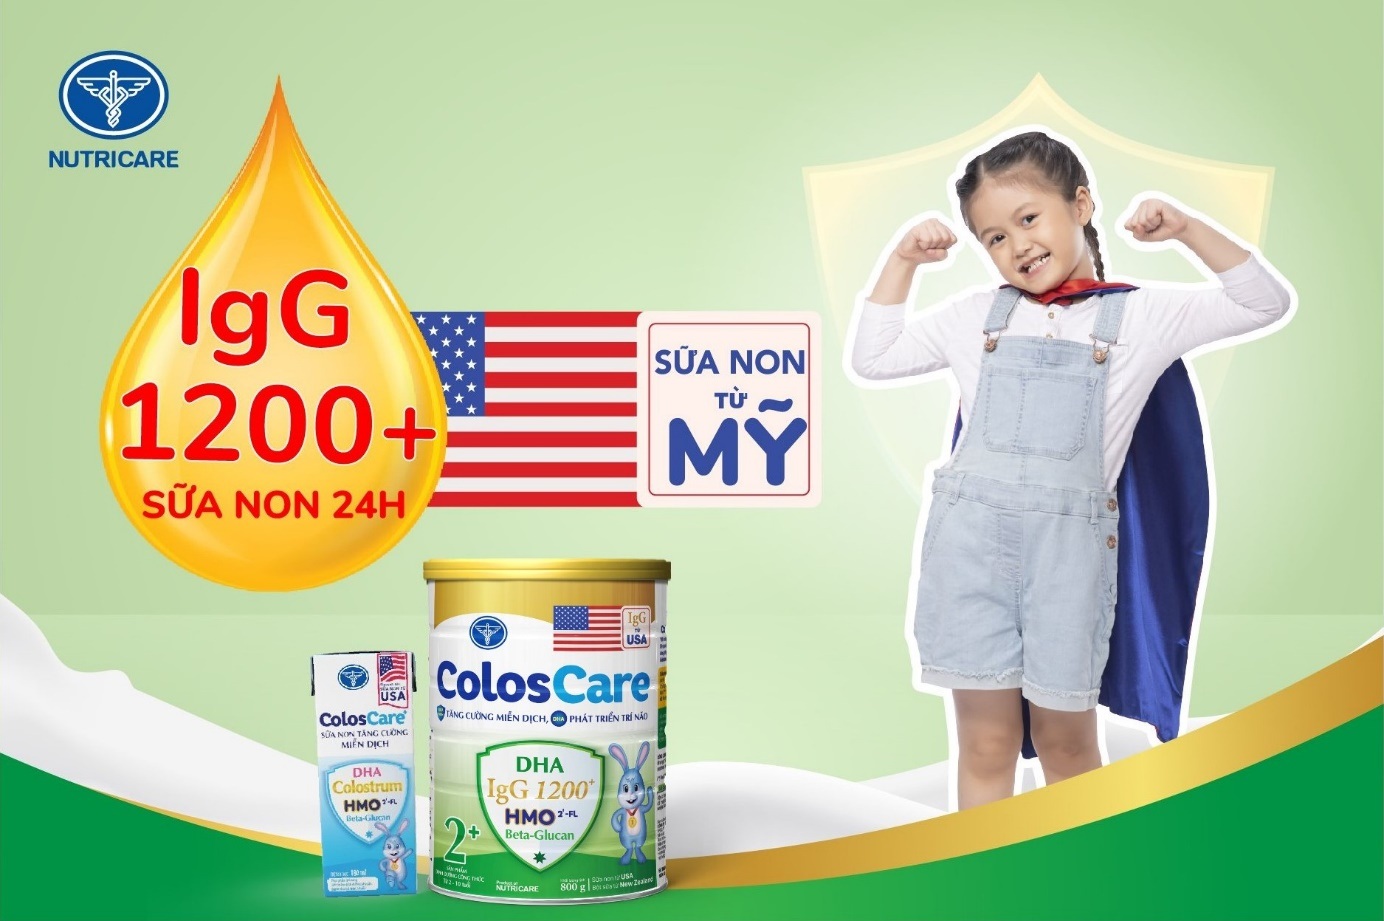 ColosCare 2+ chứa sữa non 24 giờ nhập khẩu Mỹ với hàm lượng kháng thể IgG lên tới hơn 1.200 mg giúp trẻ đề kháng khỏe (Ảnh: Nutricare).